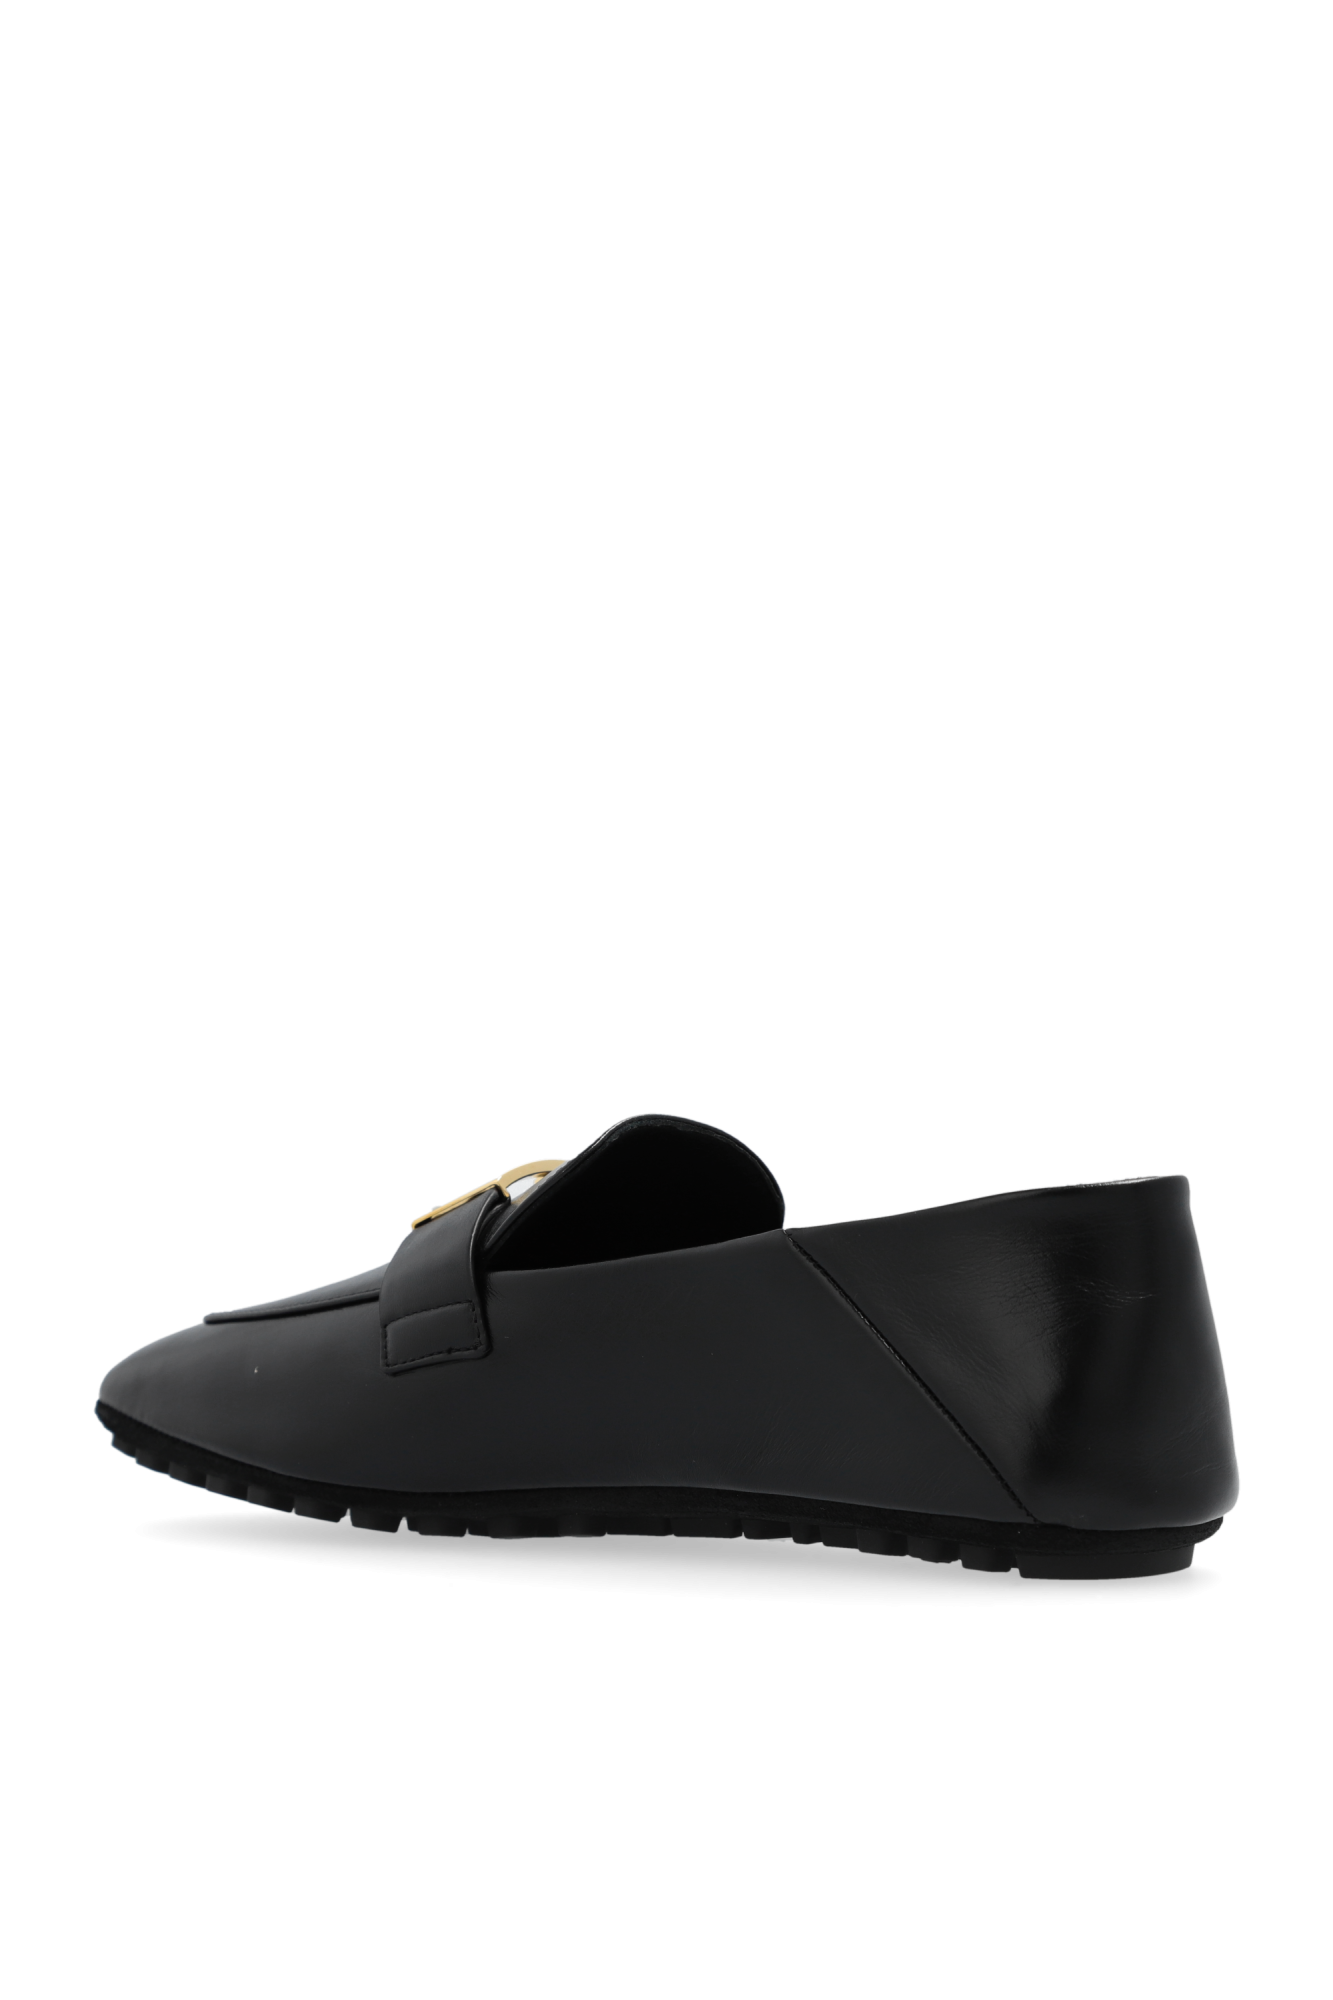 Fendi ‘Baguette’ loafers shoes